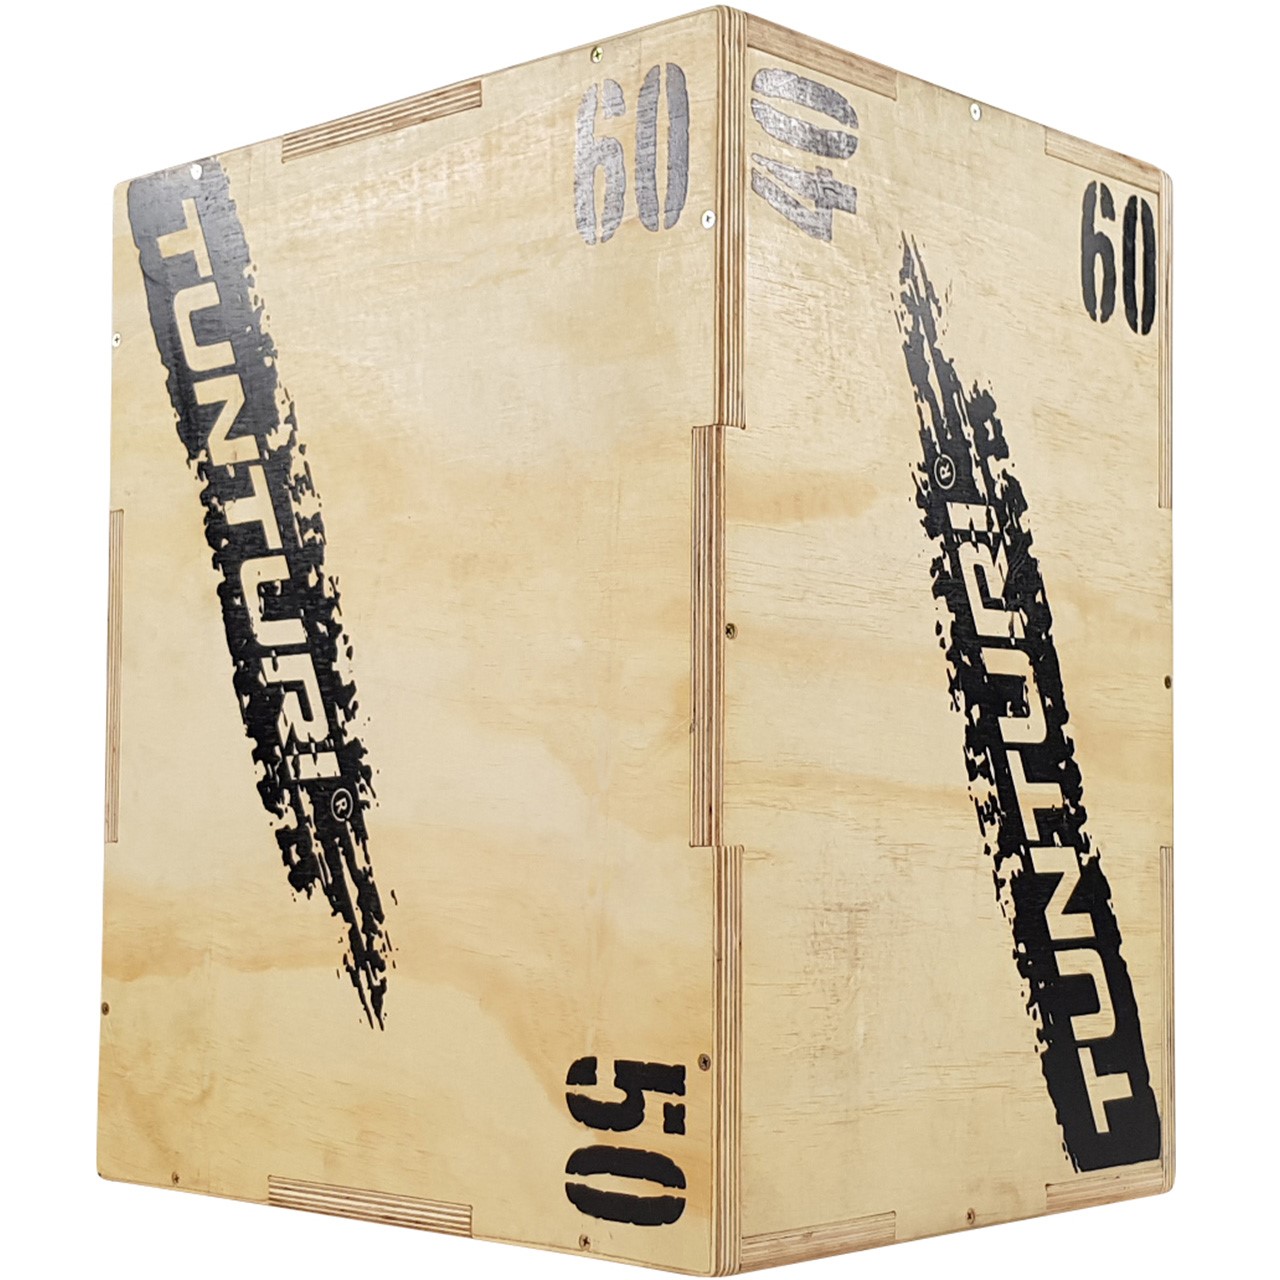 Tunturi Plyo Box Wood 40/50/60 cm